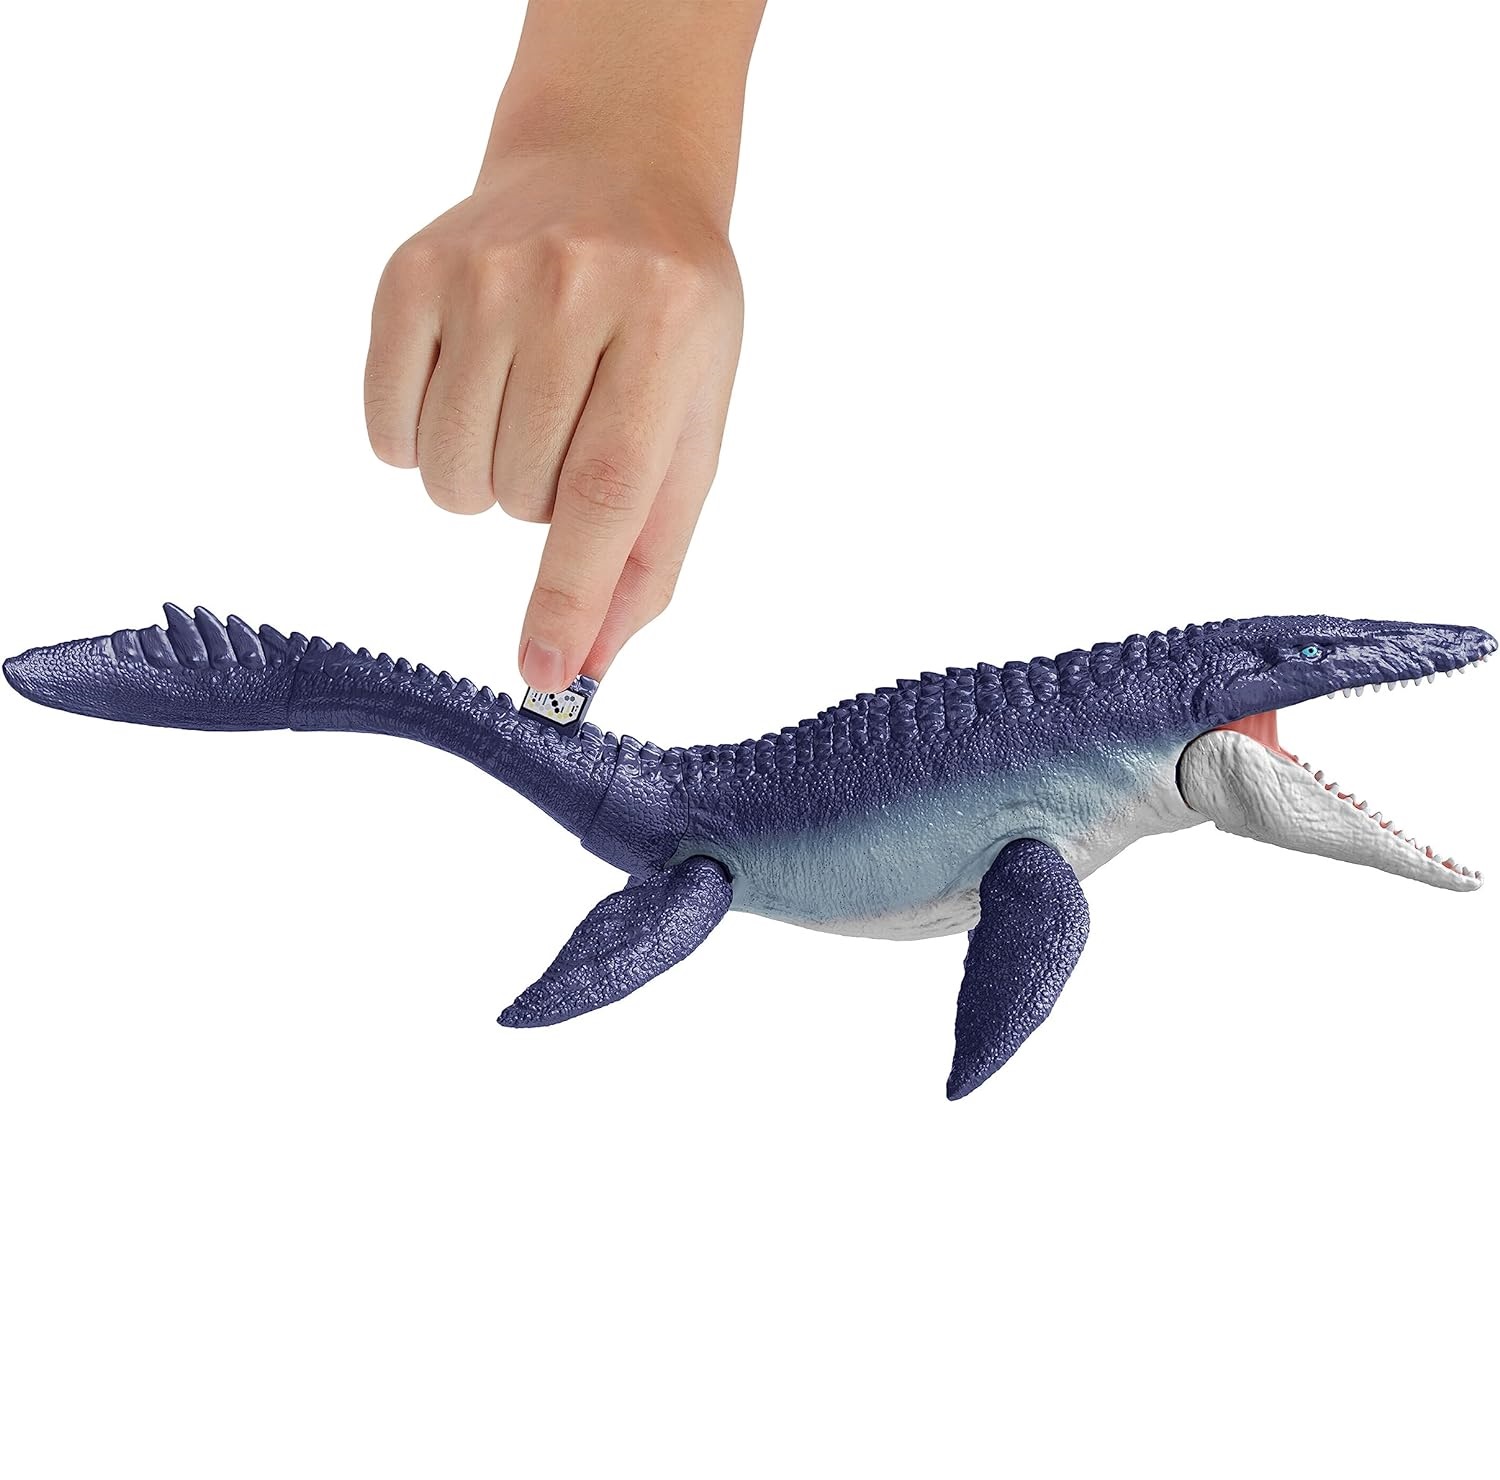 Jurassic world – mosasauro dinosauro giocattolo con articolazioni mobili, per bambini 4+ anni - Jurassic World